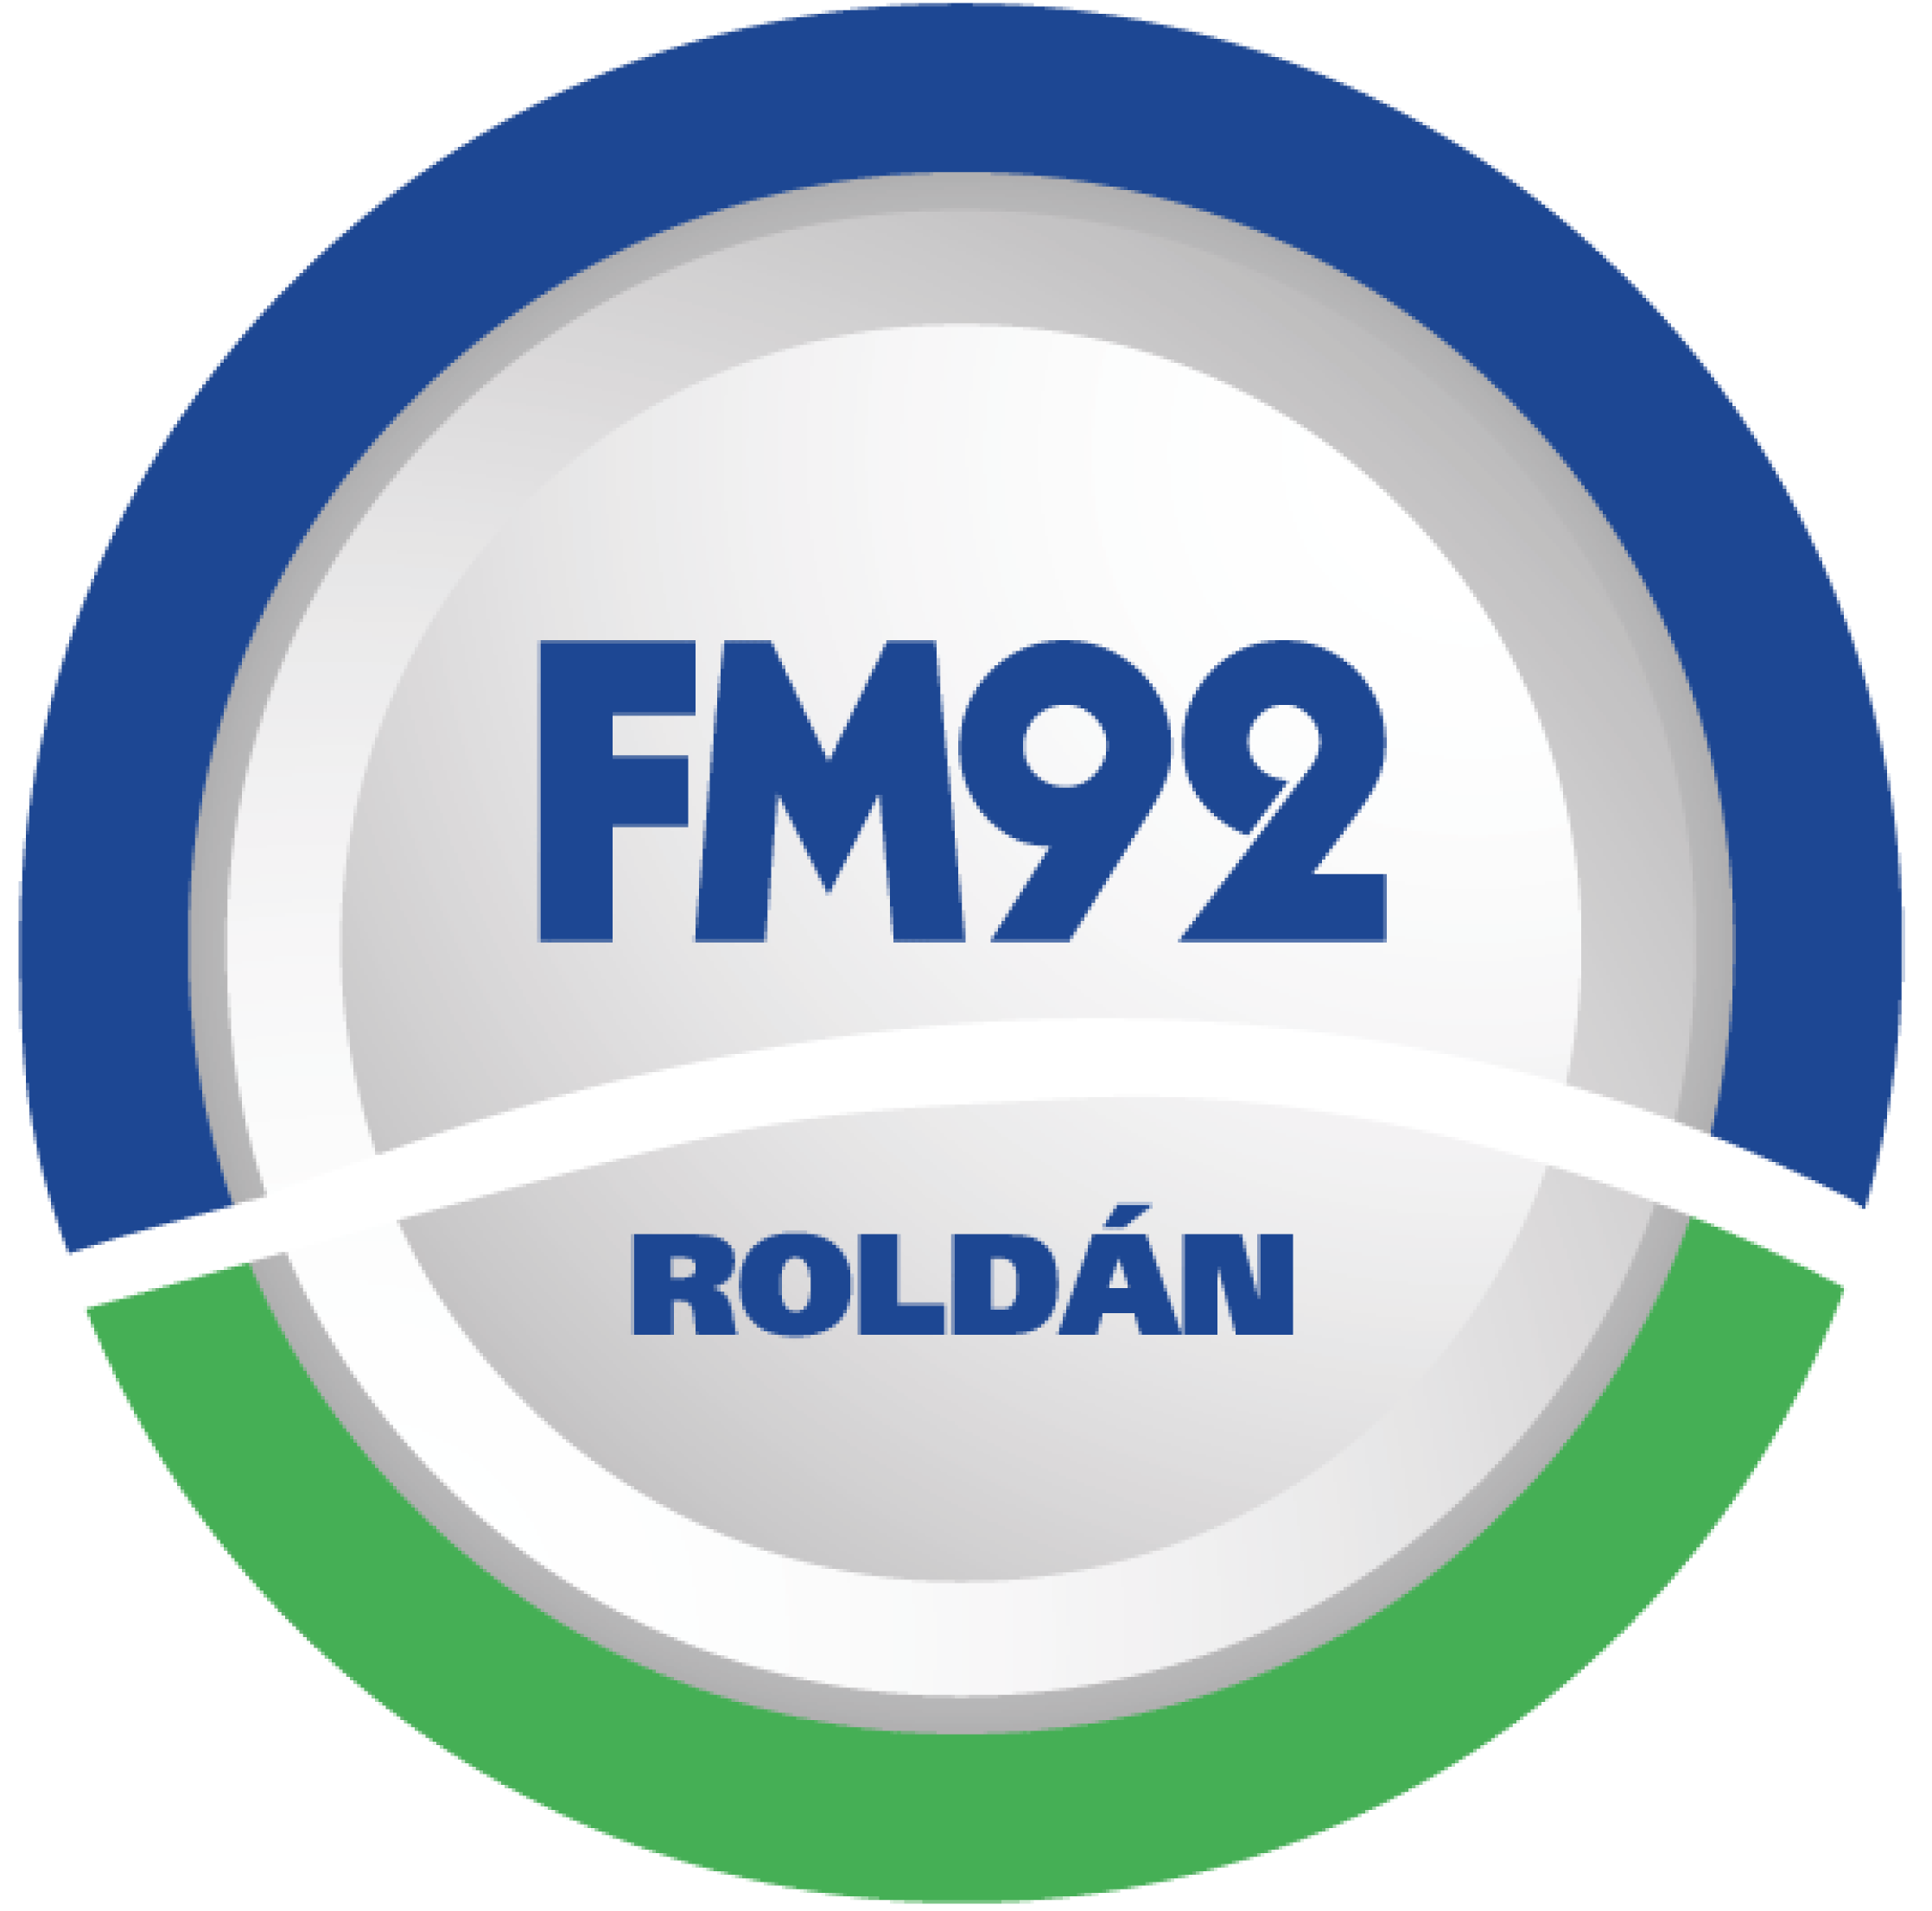 Roldan FM92